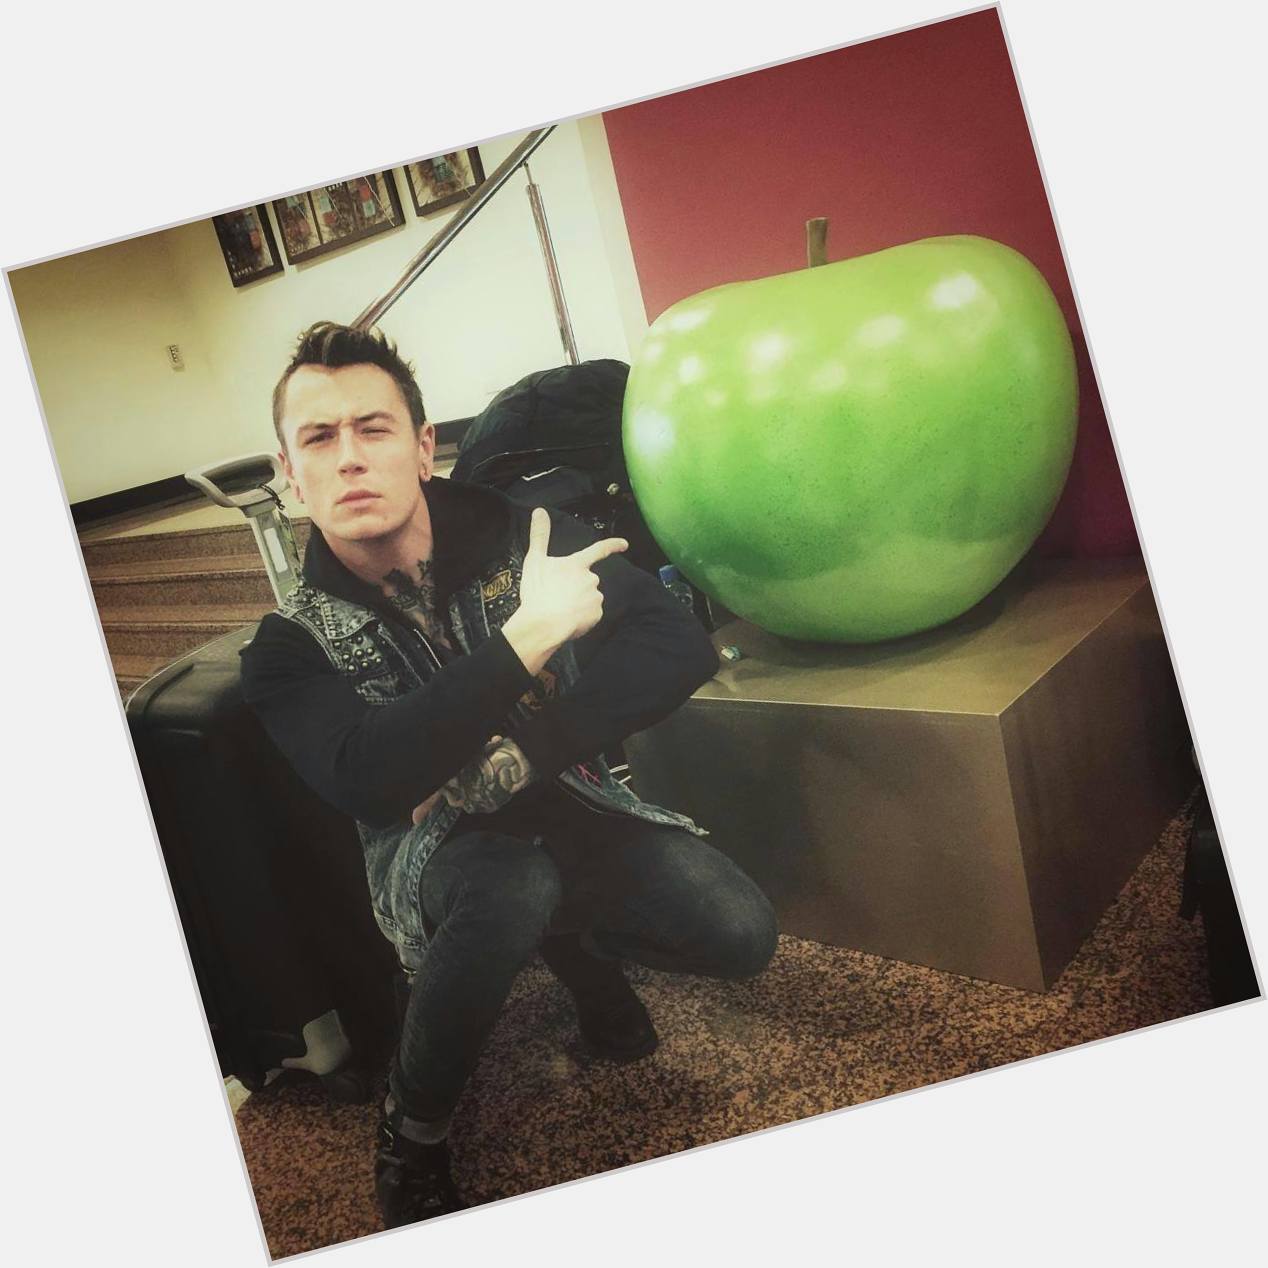 Próxima meta: ser uma maçã gigante e tirar foto com o James. u.u
Happy bday  